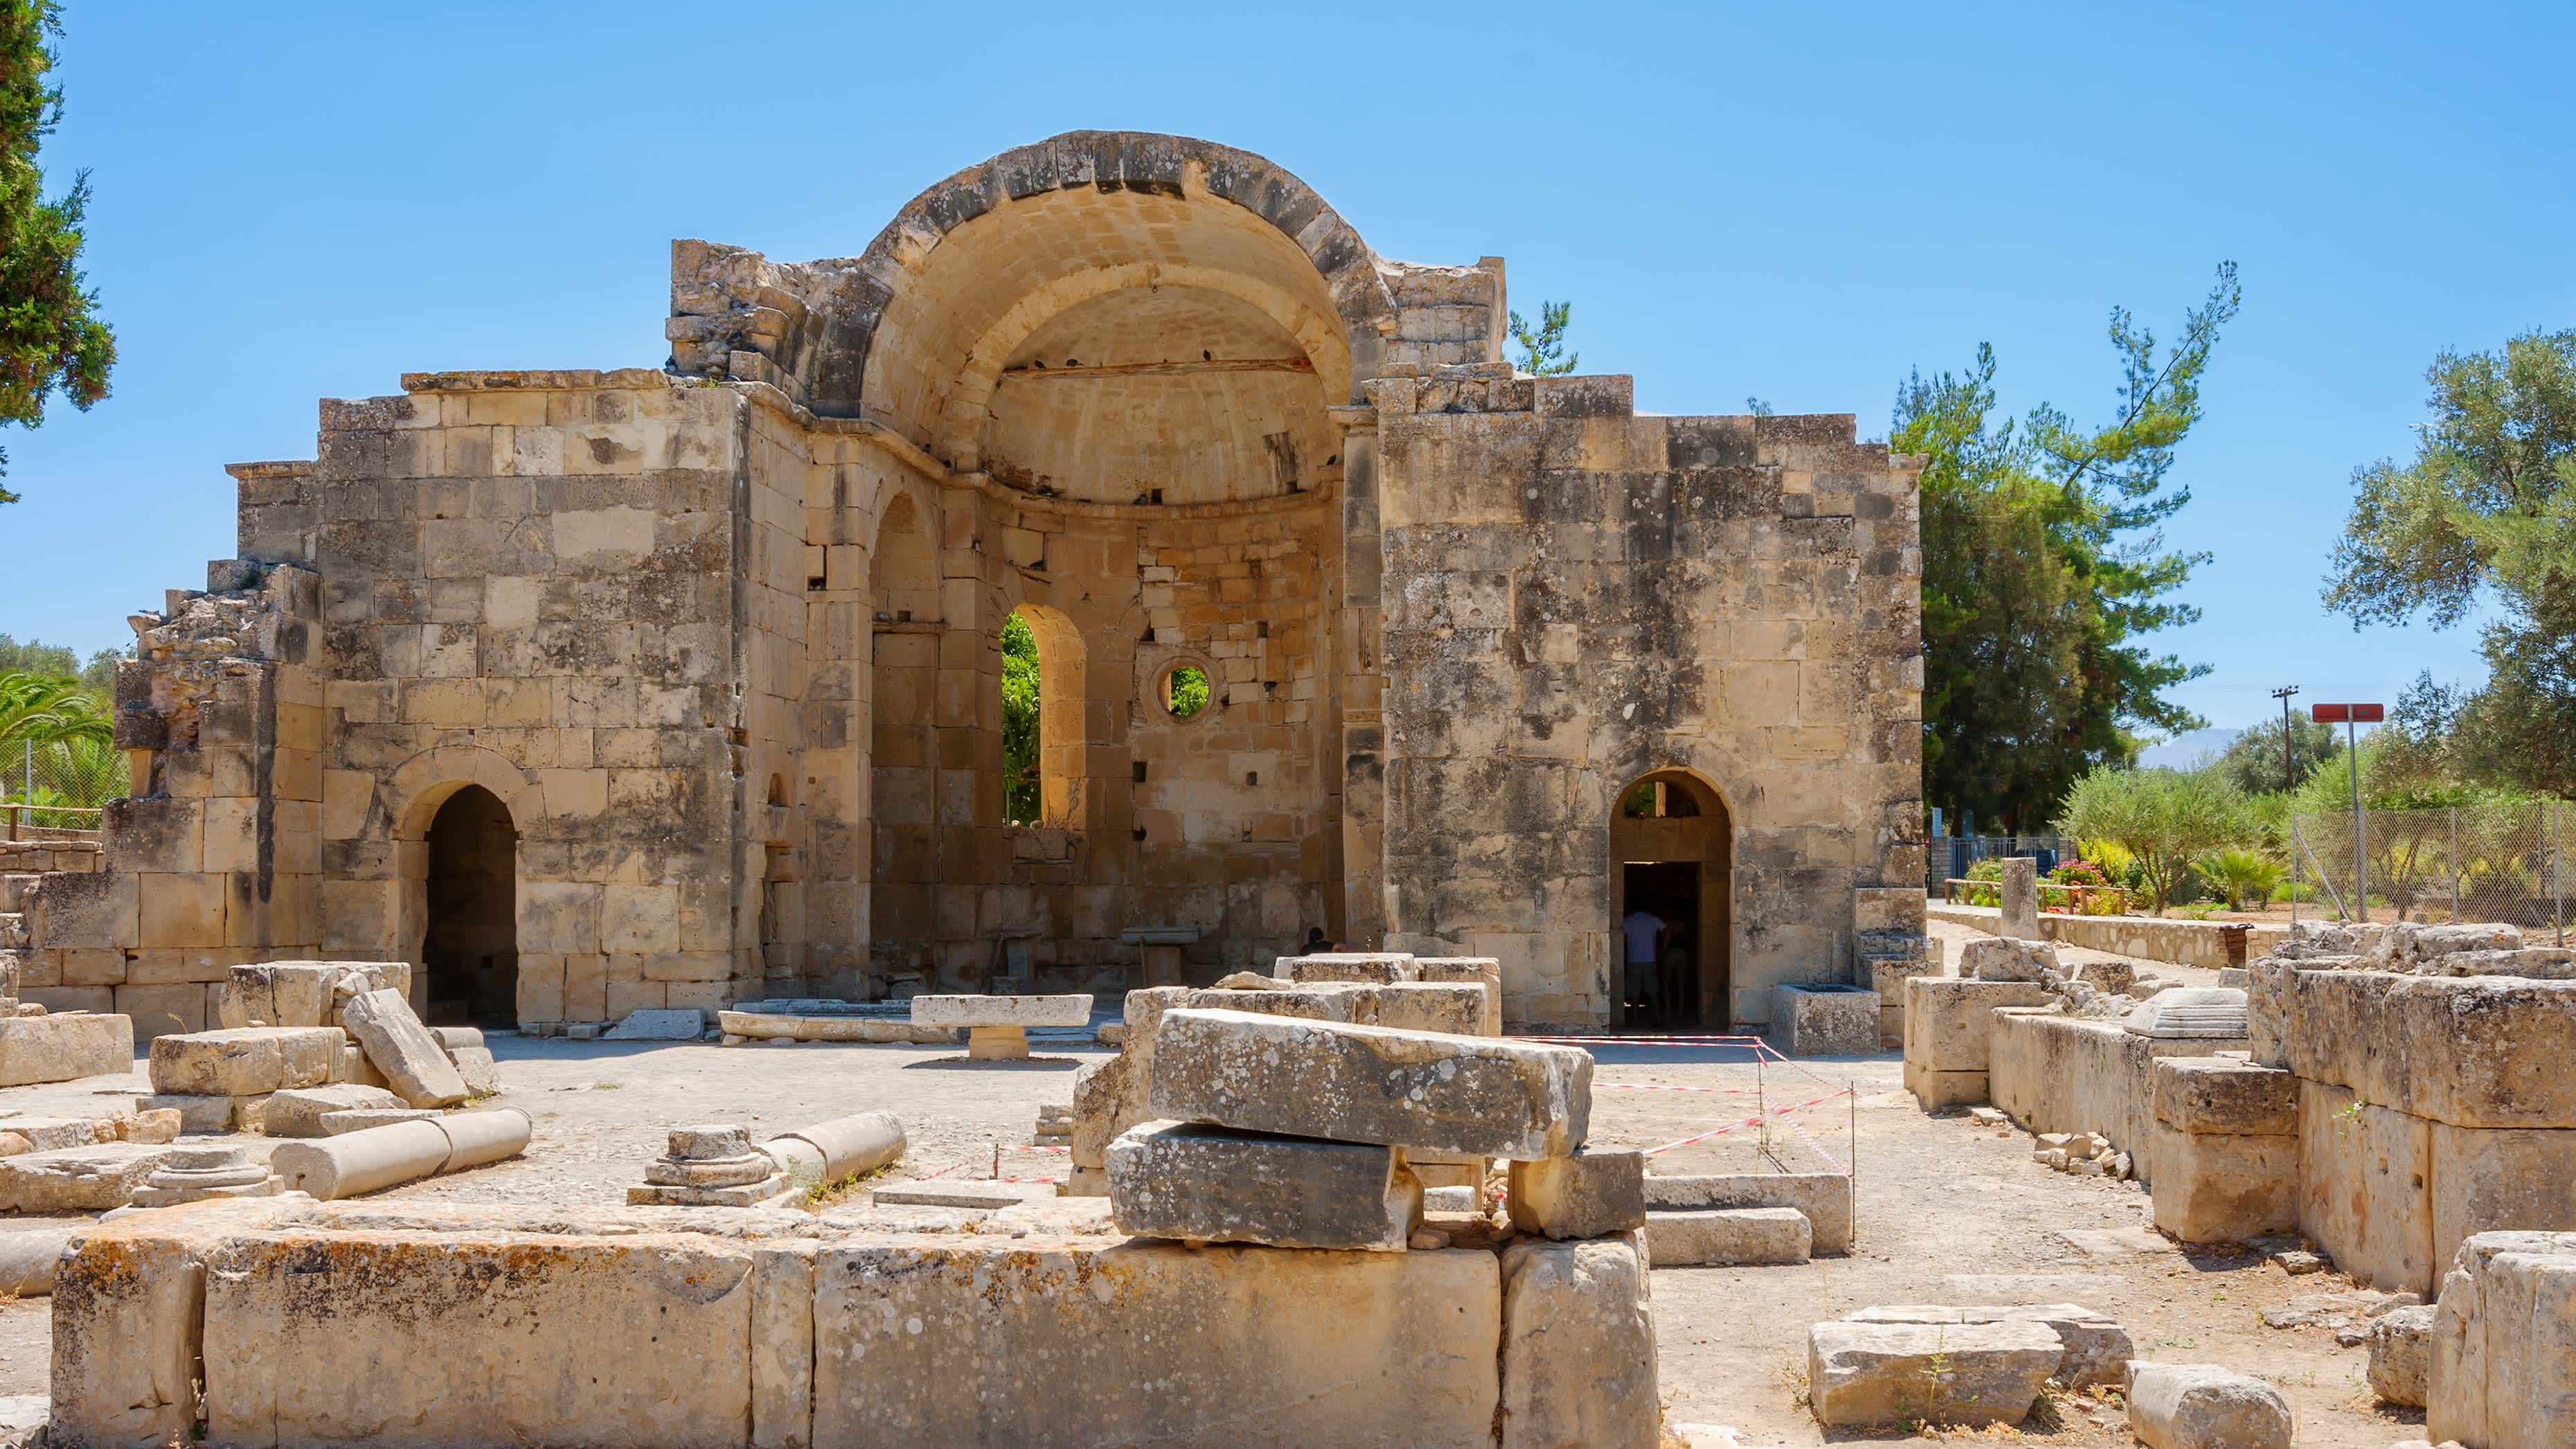 Basilika von Agios Titos in der antiken Stätte von Gortyn, Kreta, Griechenland

